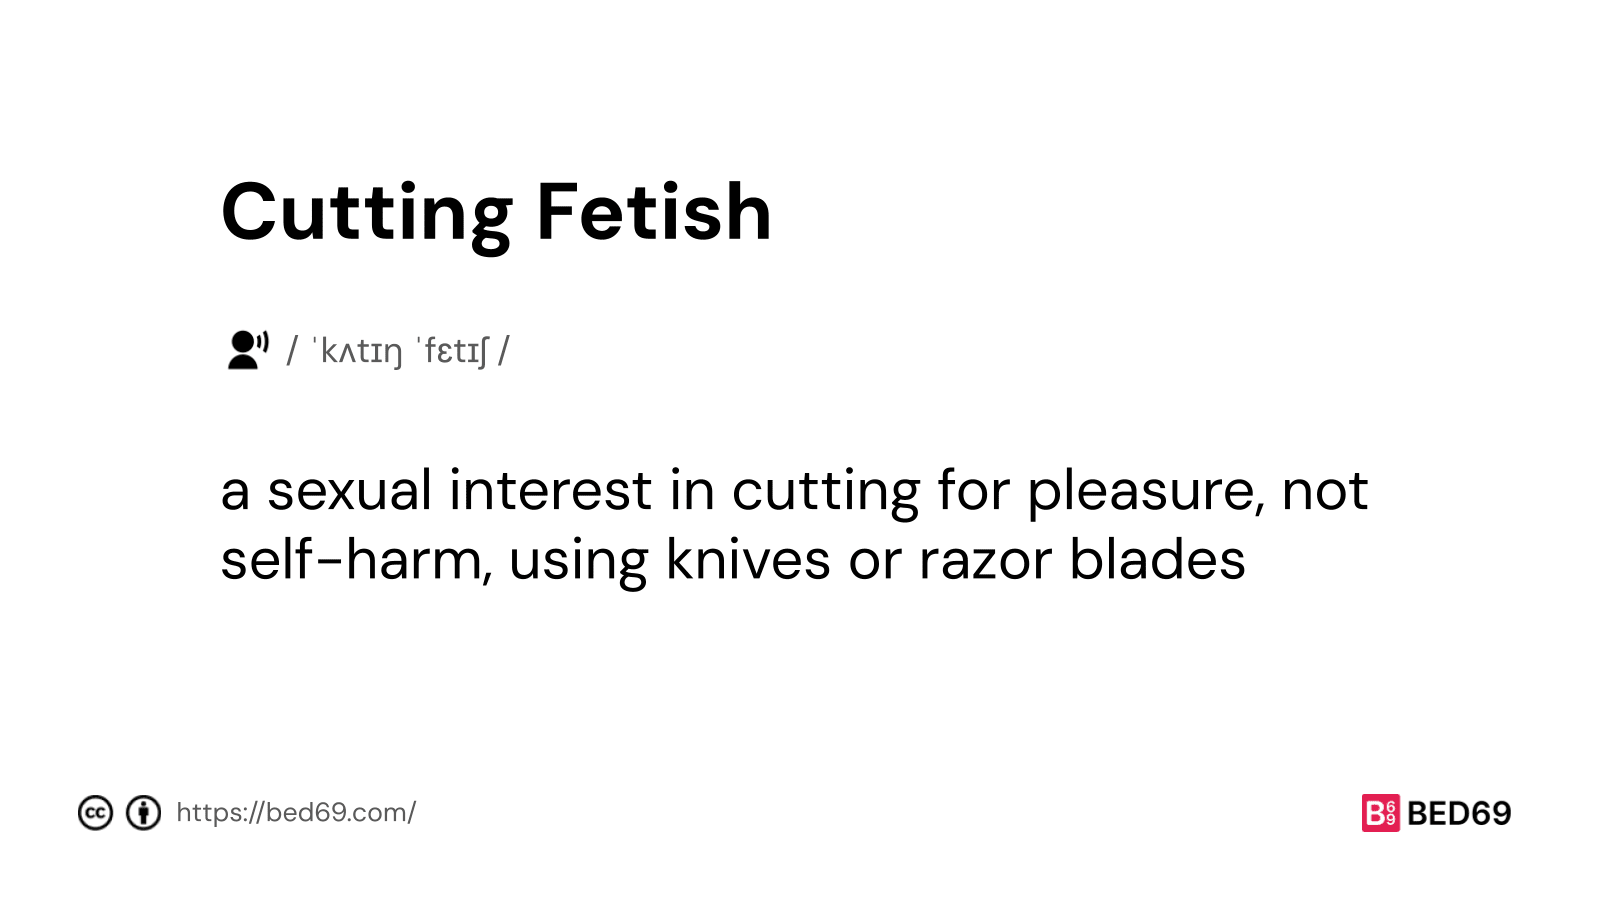 Cutting Fetish - Word Definition